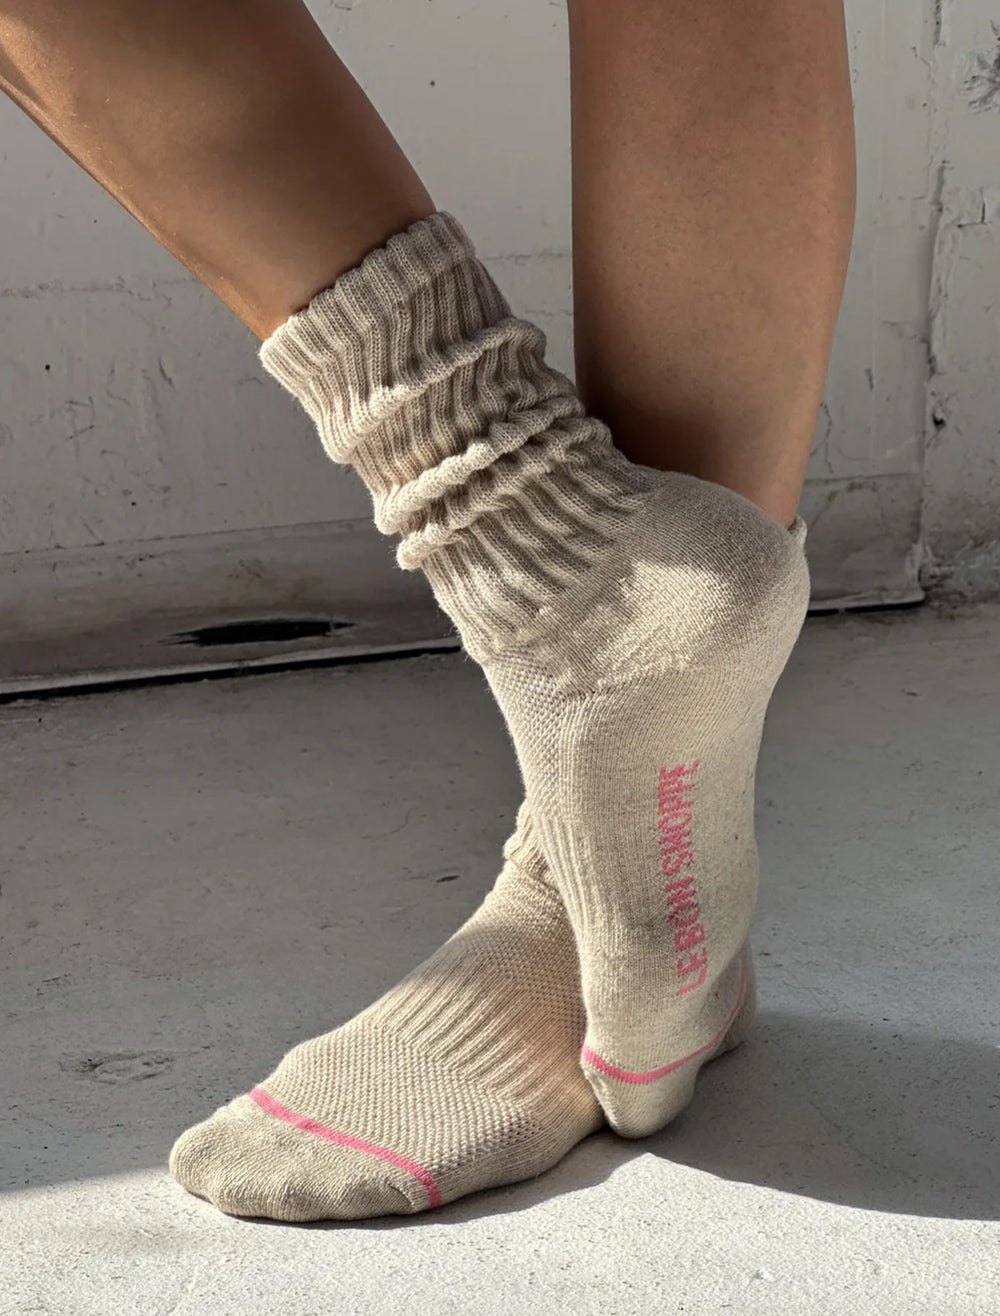 Model wearing Le Bon Shoppe's ballet socks in oatmeal.